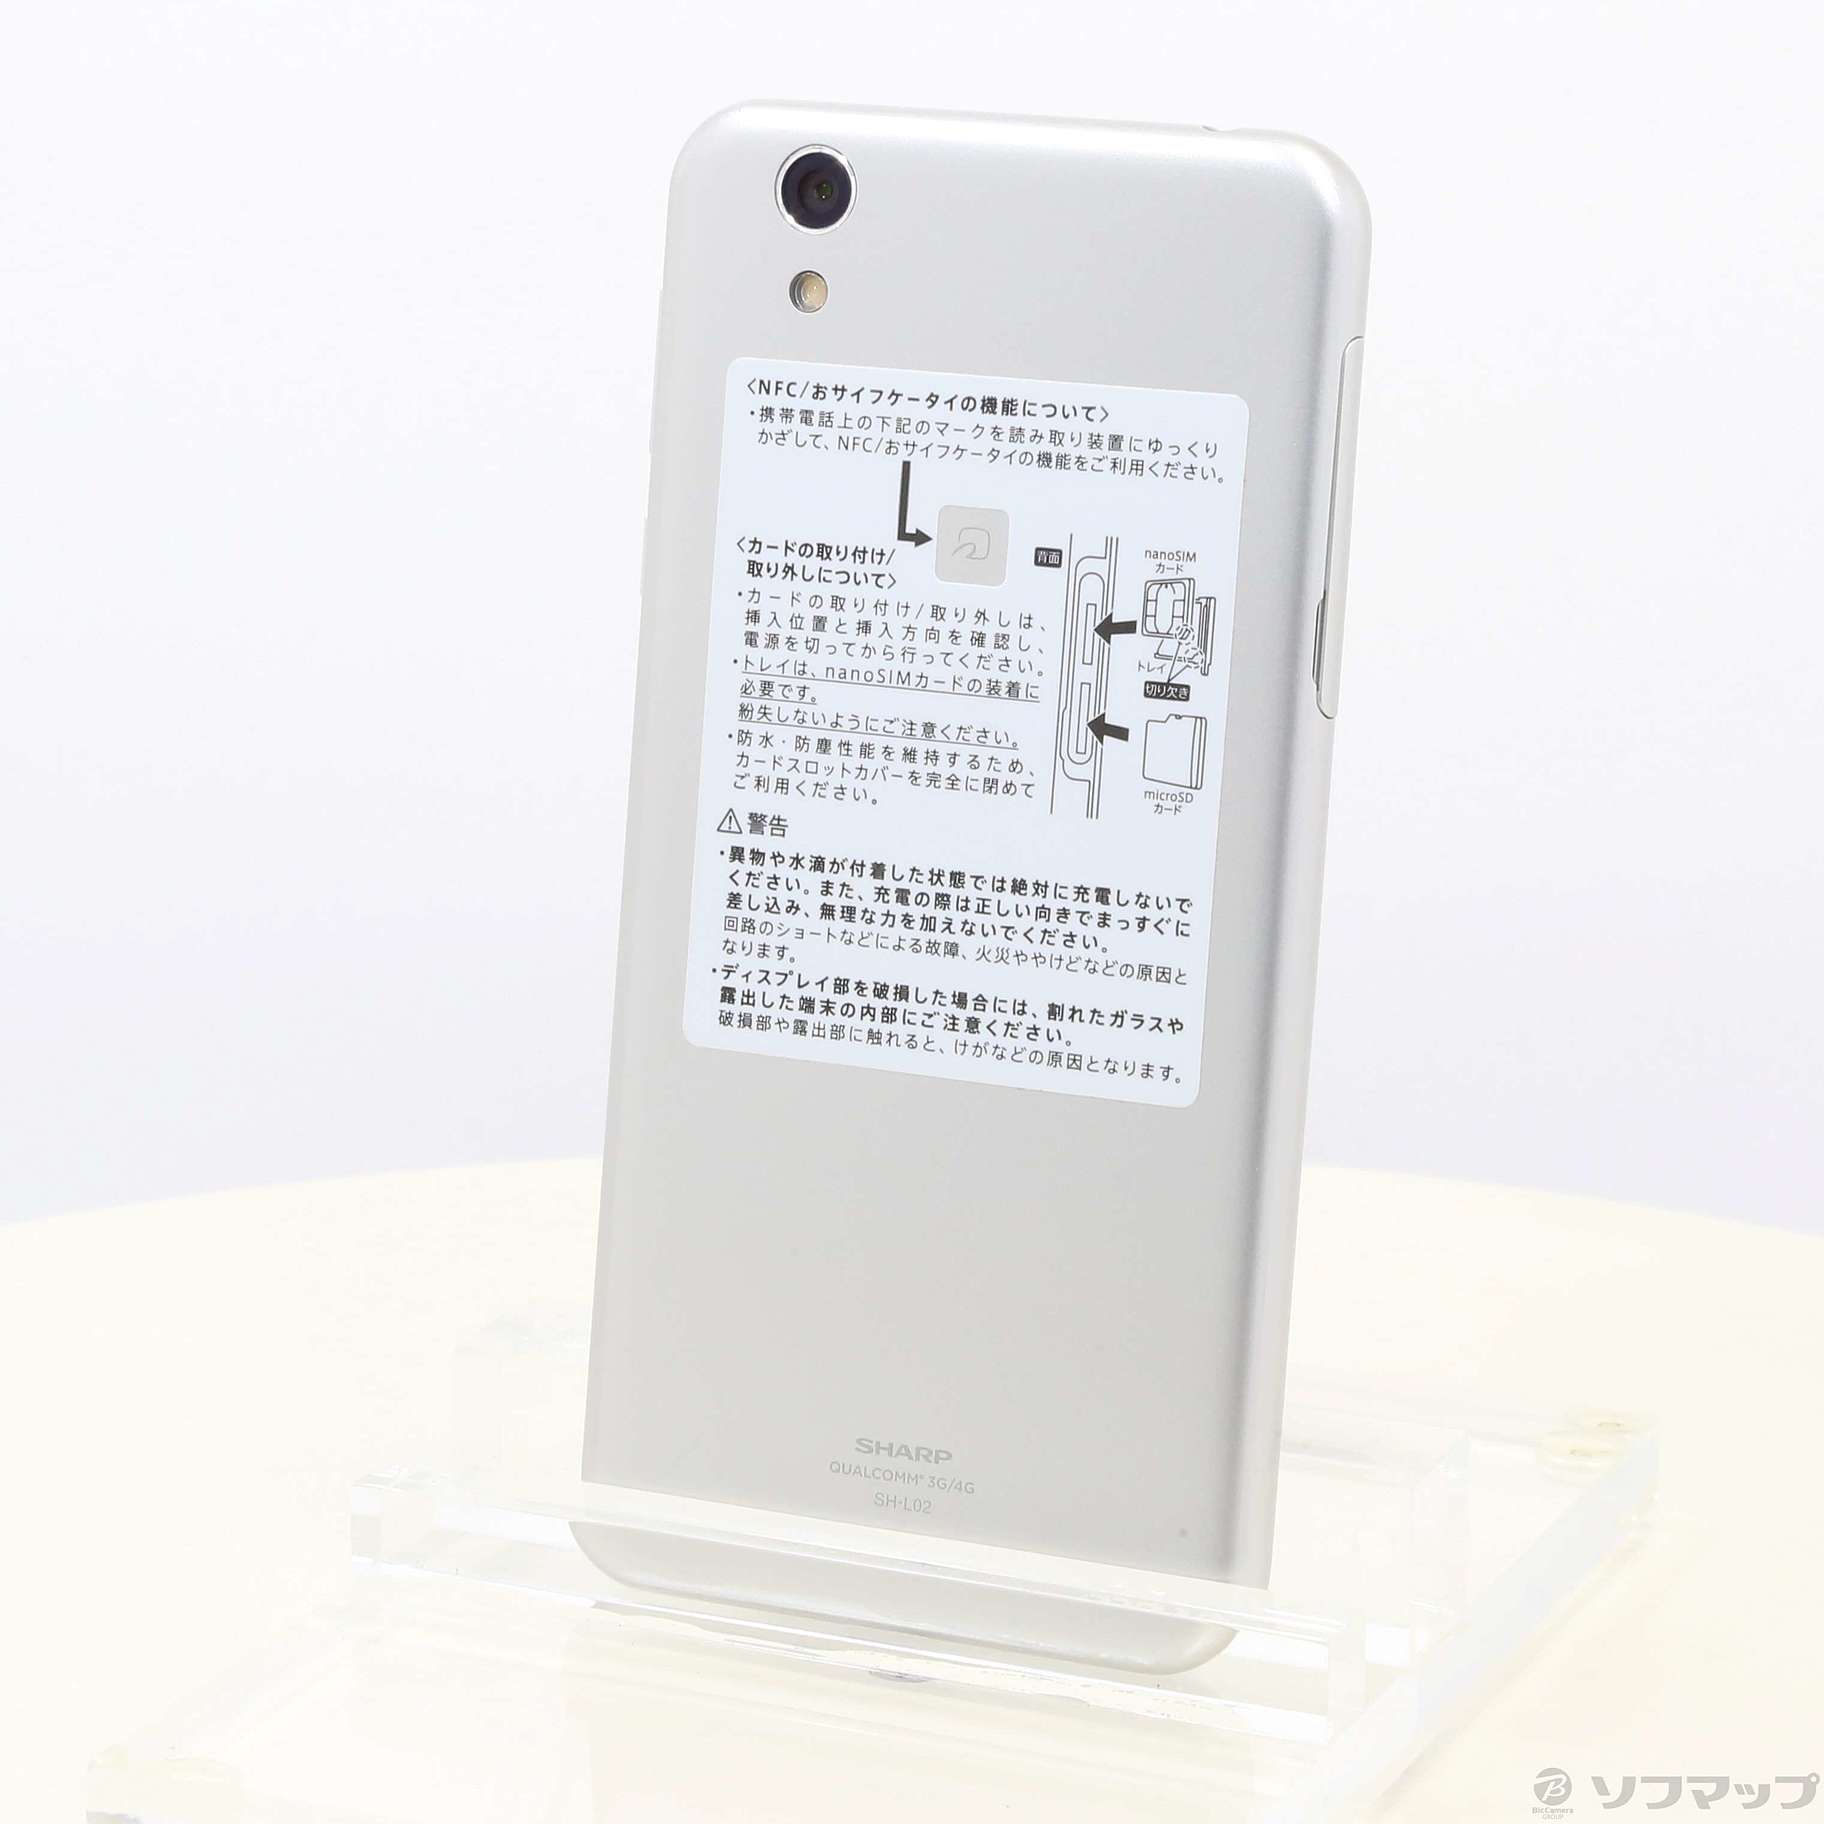 引き出物 AQUOS L2 White 16 GB SIMフリー sushitai.com.mx